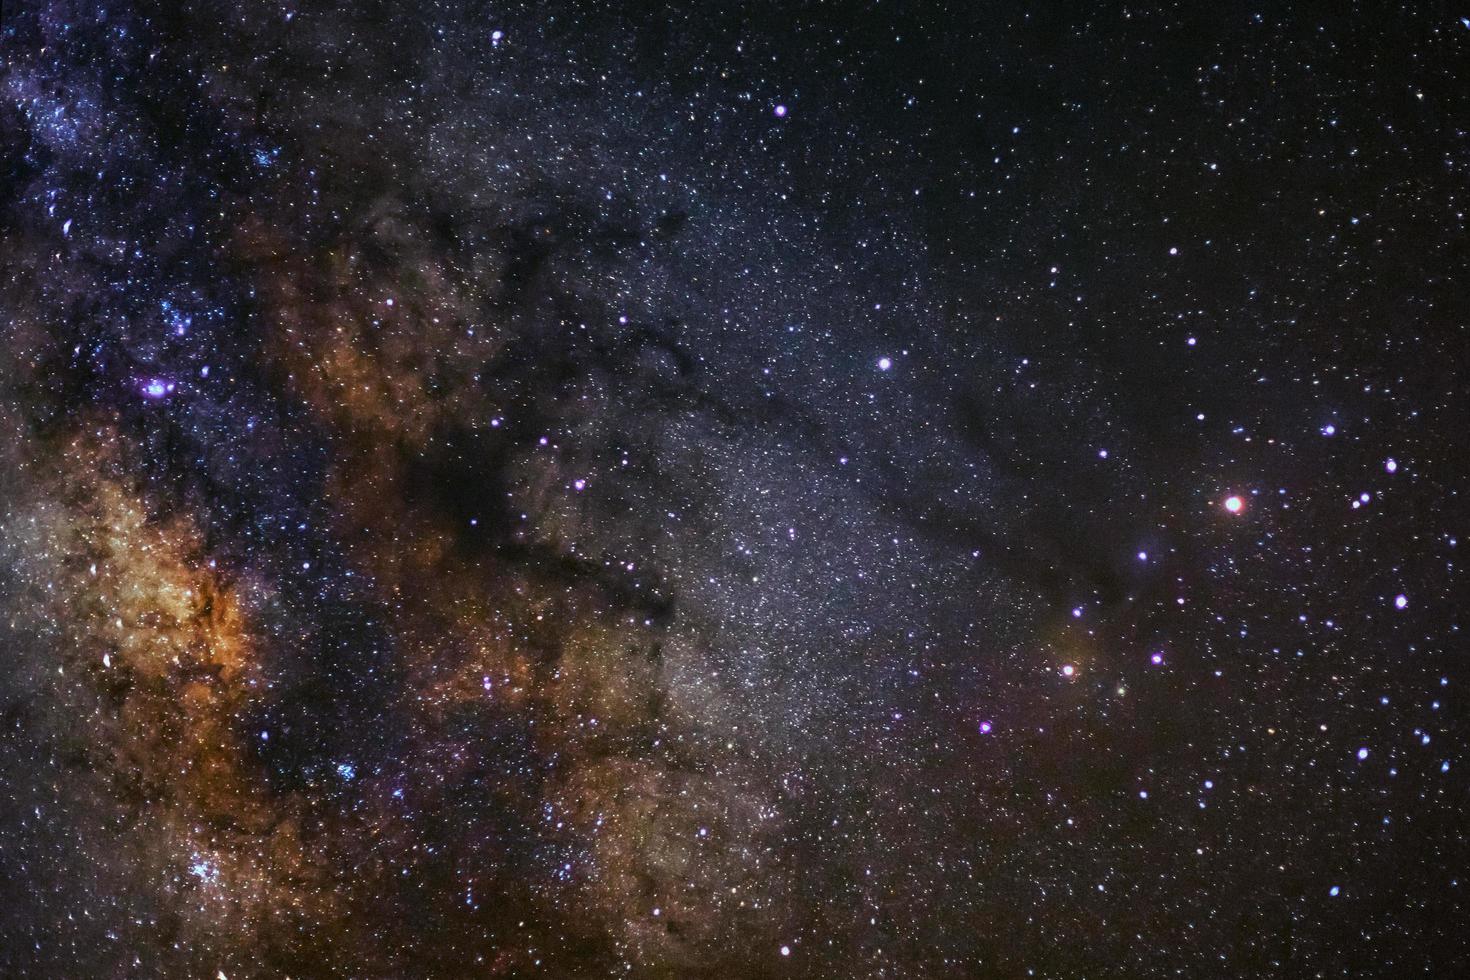 Milchstraßengalaxie mit Sternen und Weltraumstaub im Universum, Foto mit langer Belichtungszeit, mit Korn.